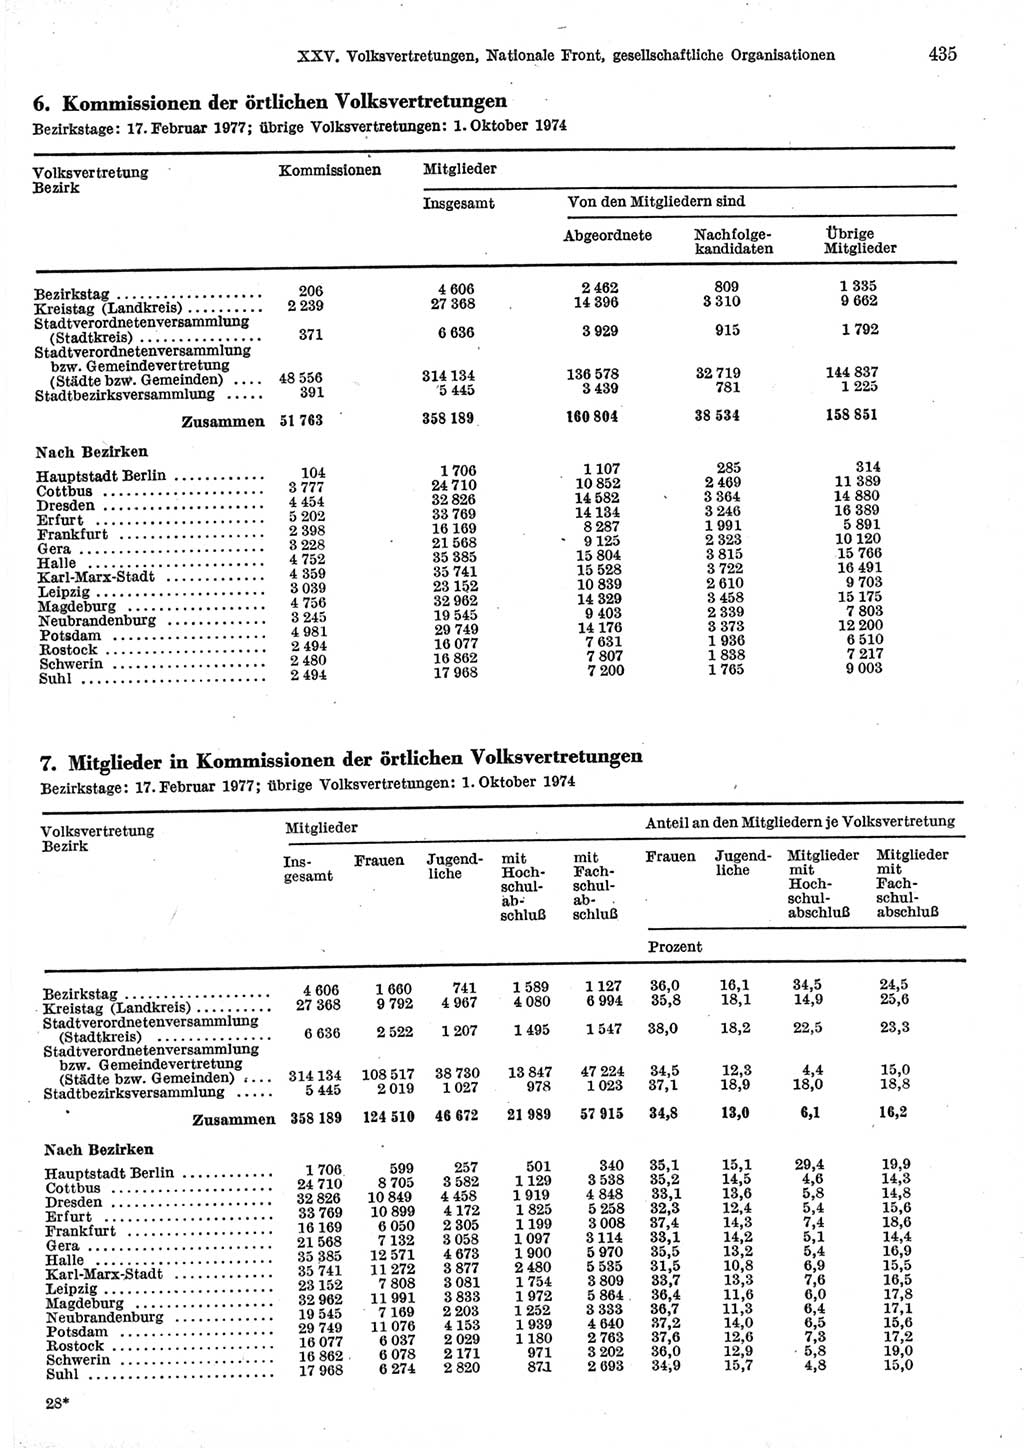 Statistisches Jahrbuch der Deutschen Demokratischen Republik (DDR) 1977, Seite 435 (Stat. Jb. DDR 1977, S. 435)